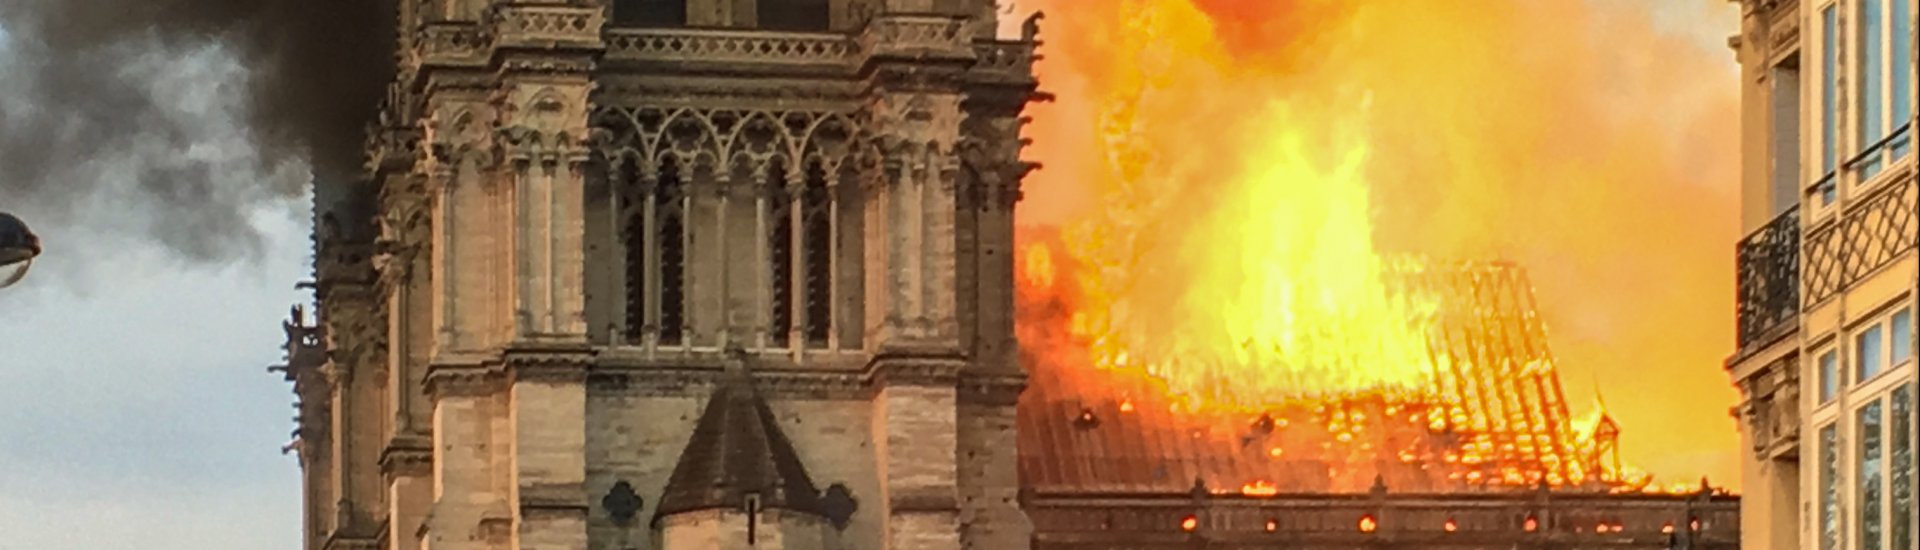 De Notre-Dame in Parijs staat in brand (15 april 2019). 